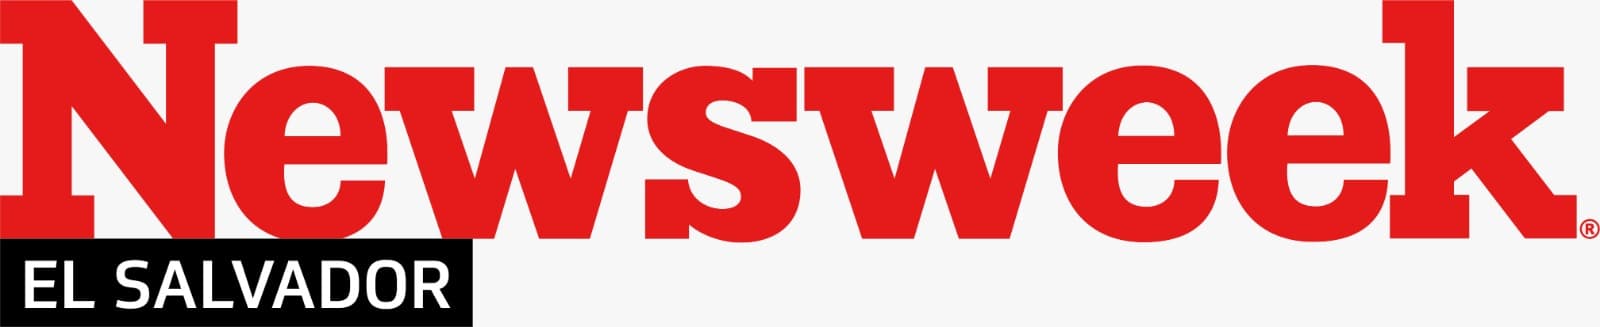 Newsweek El Salvador